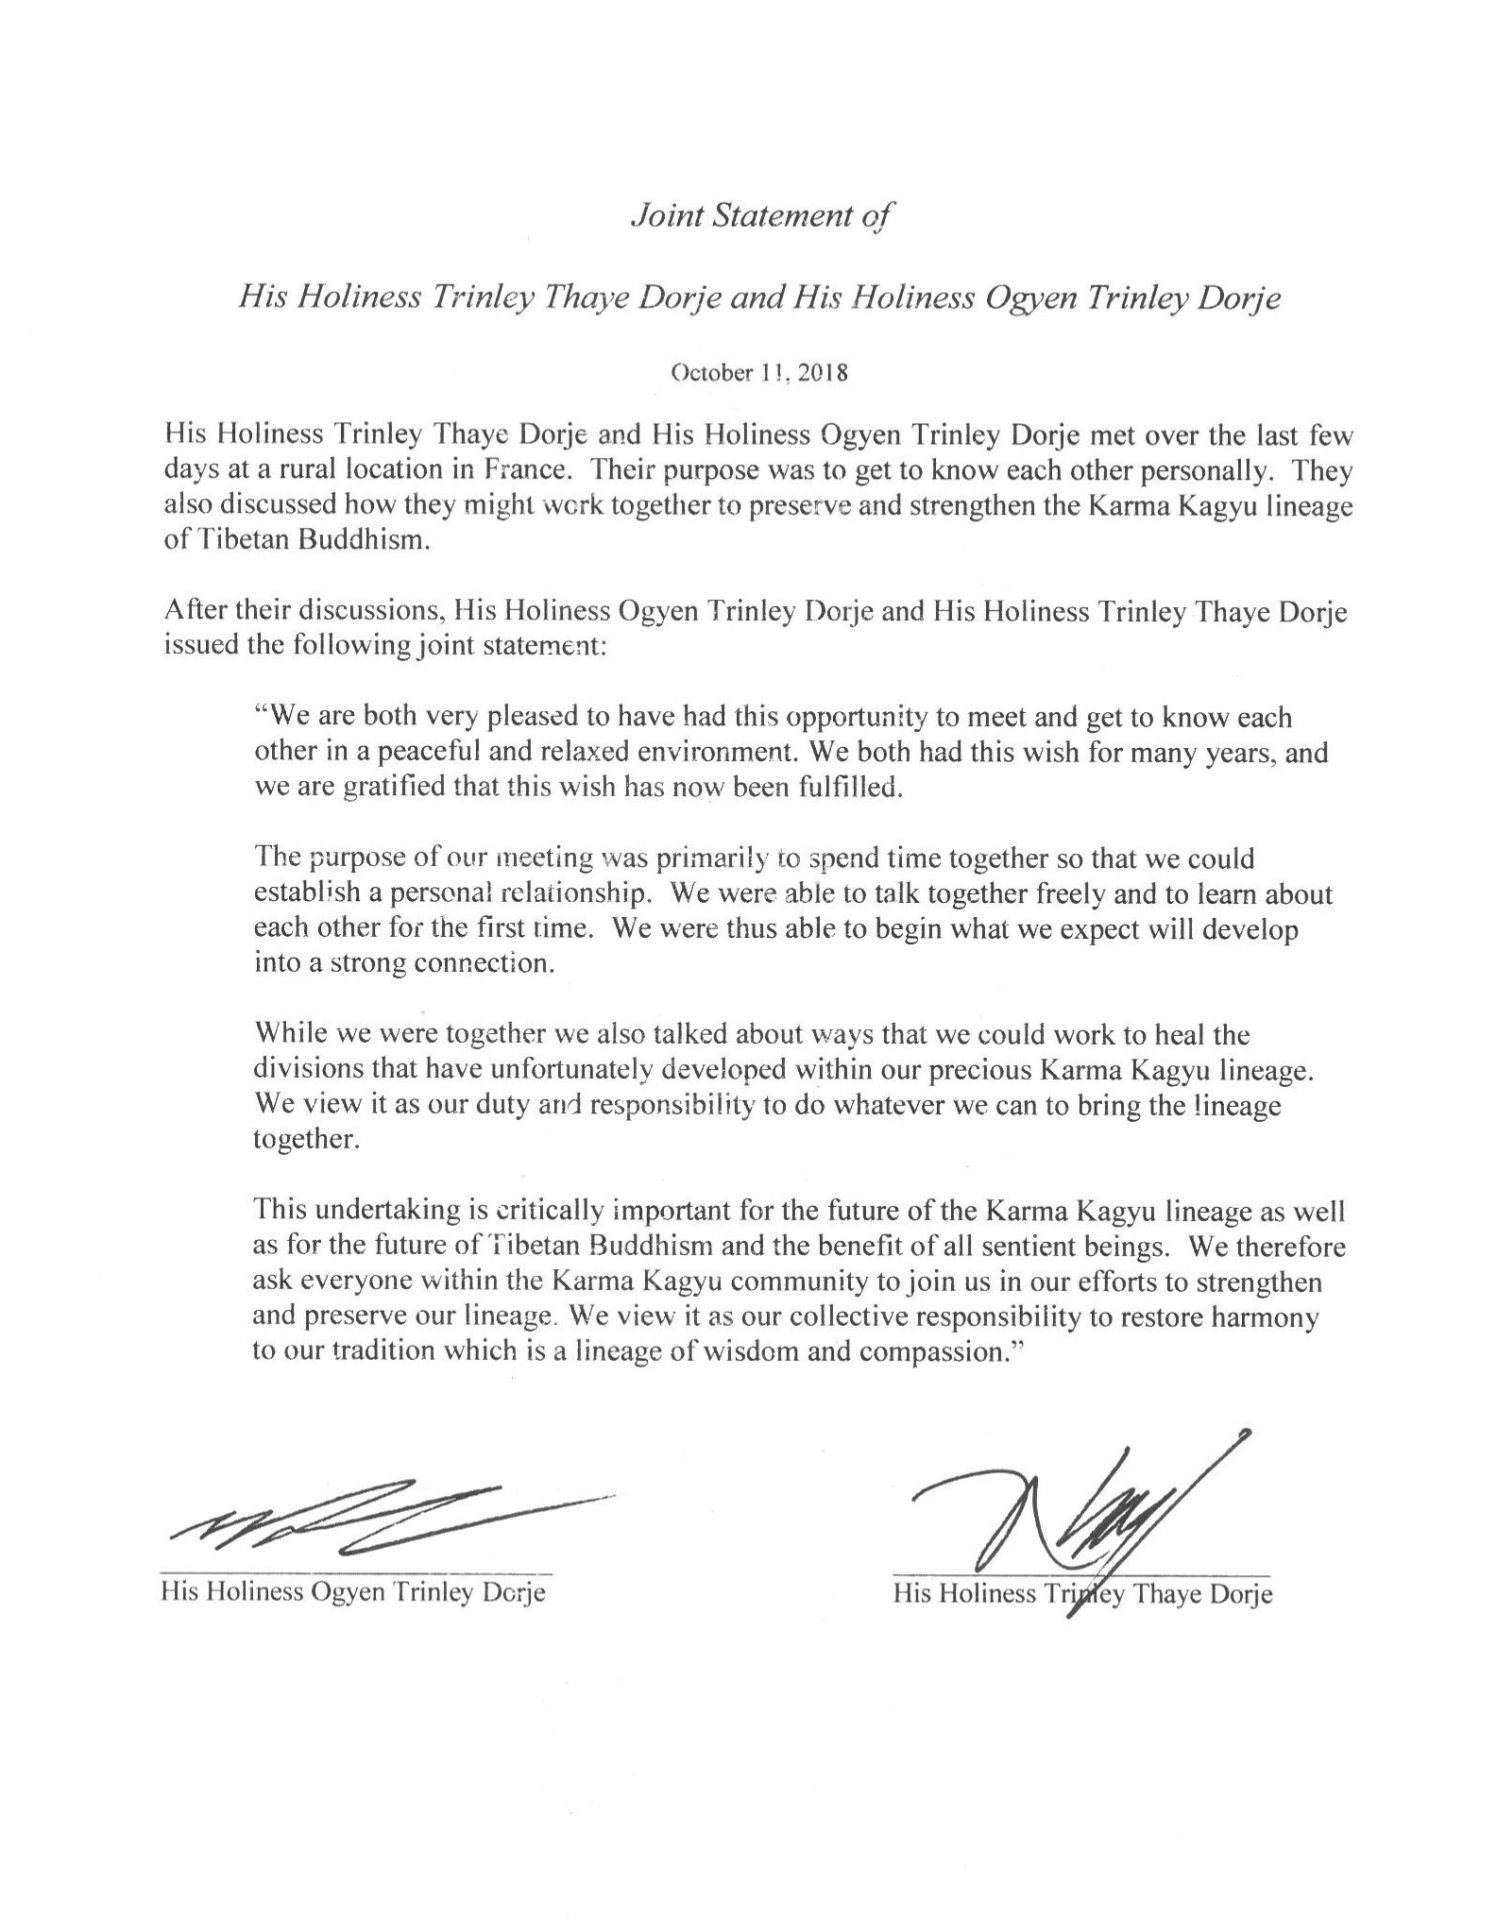 Gemeinsame Erklärung von S. H. Trinley Thaye Dorje und S.H. Ogyen Trinley Dorje in Englisch